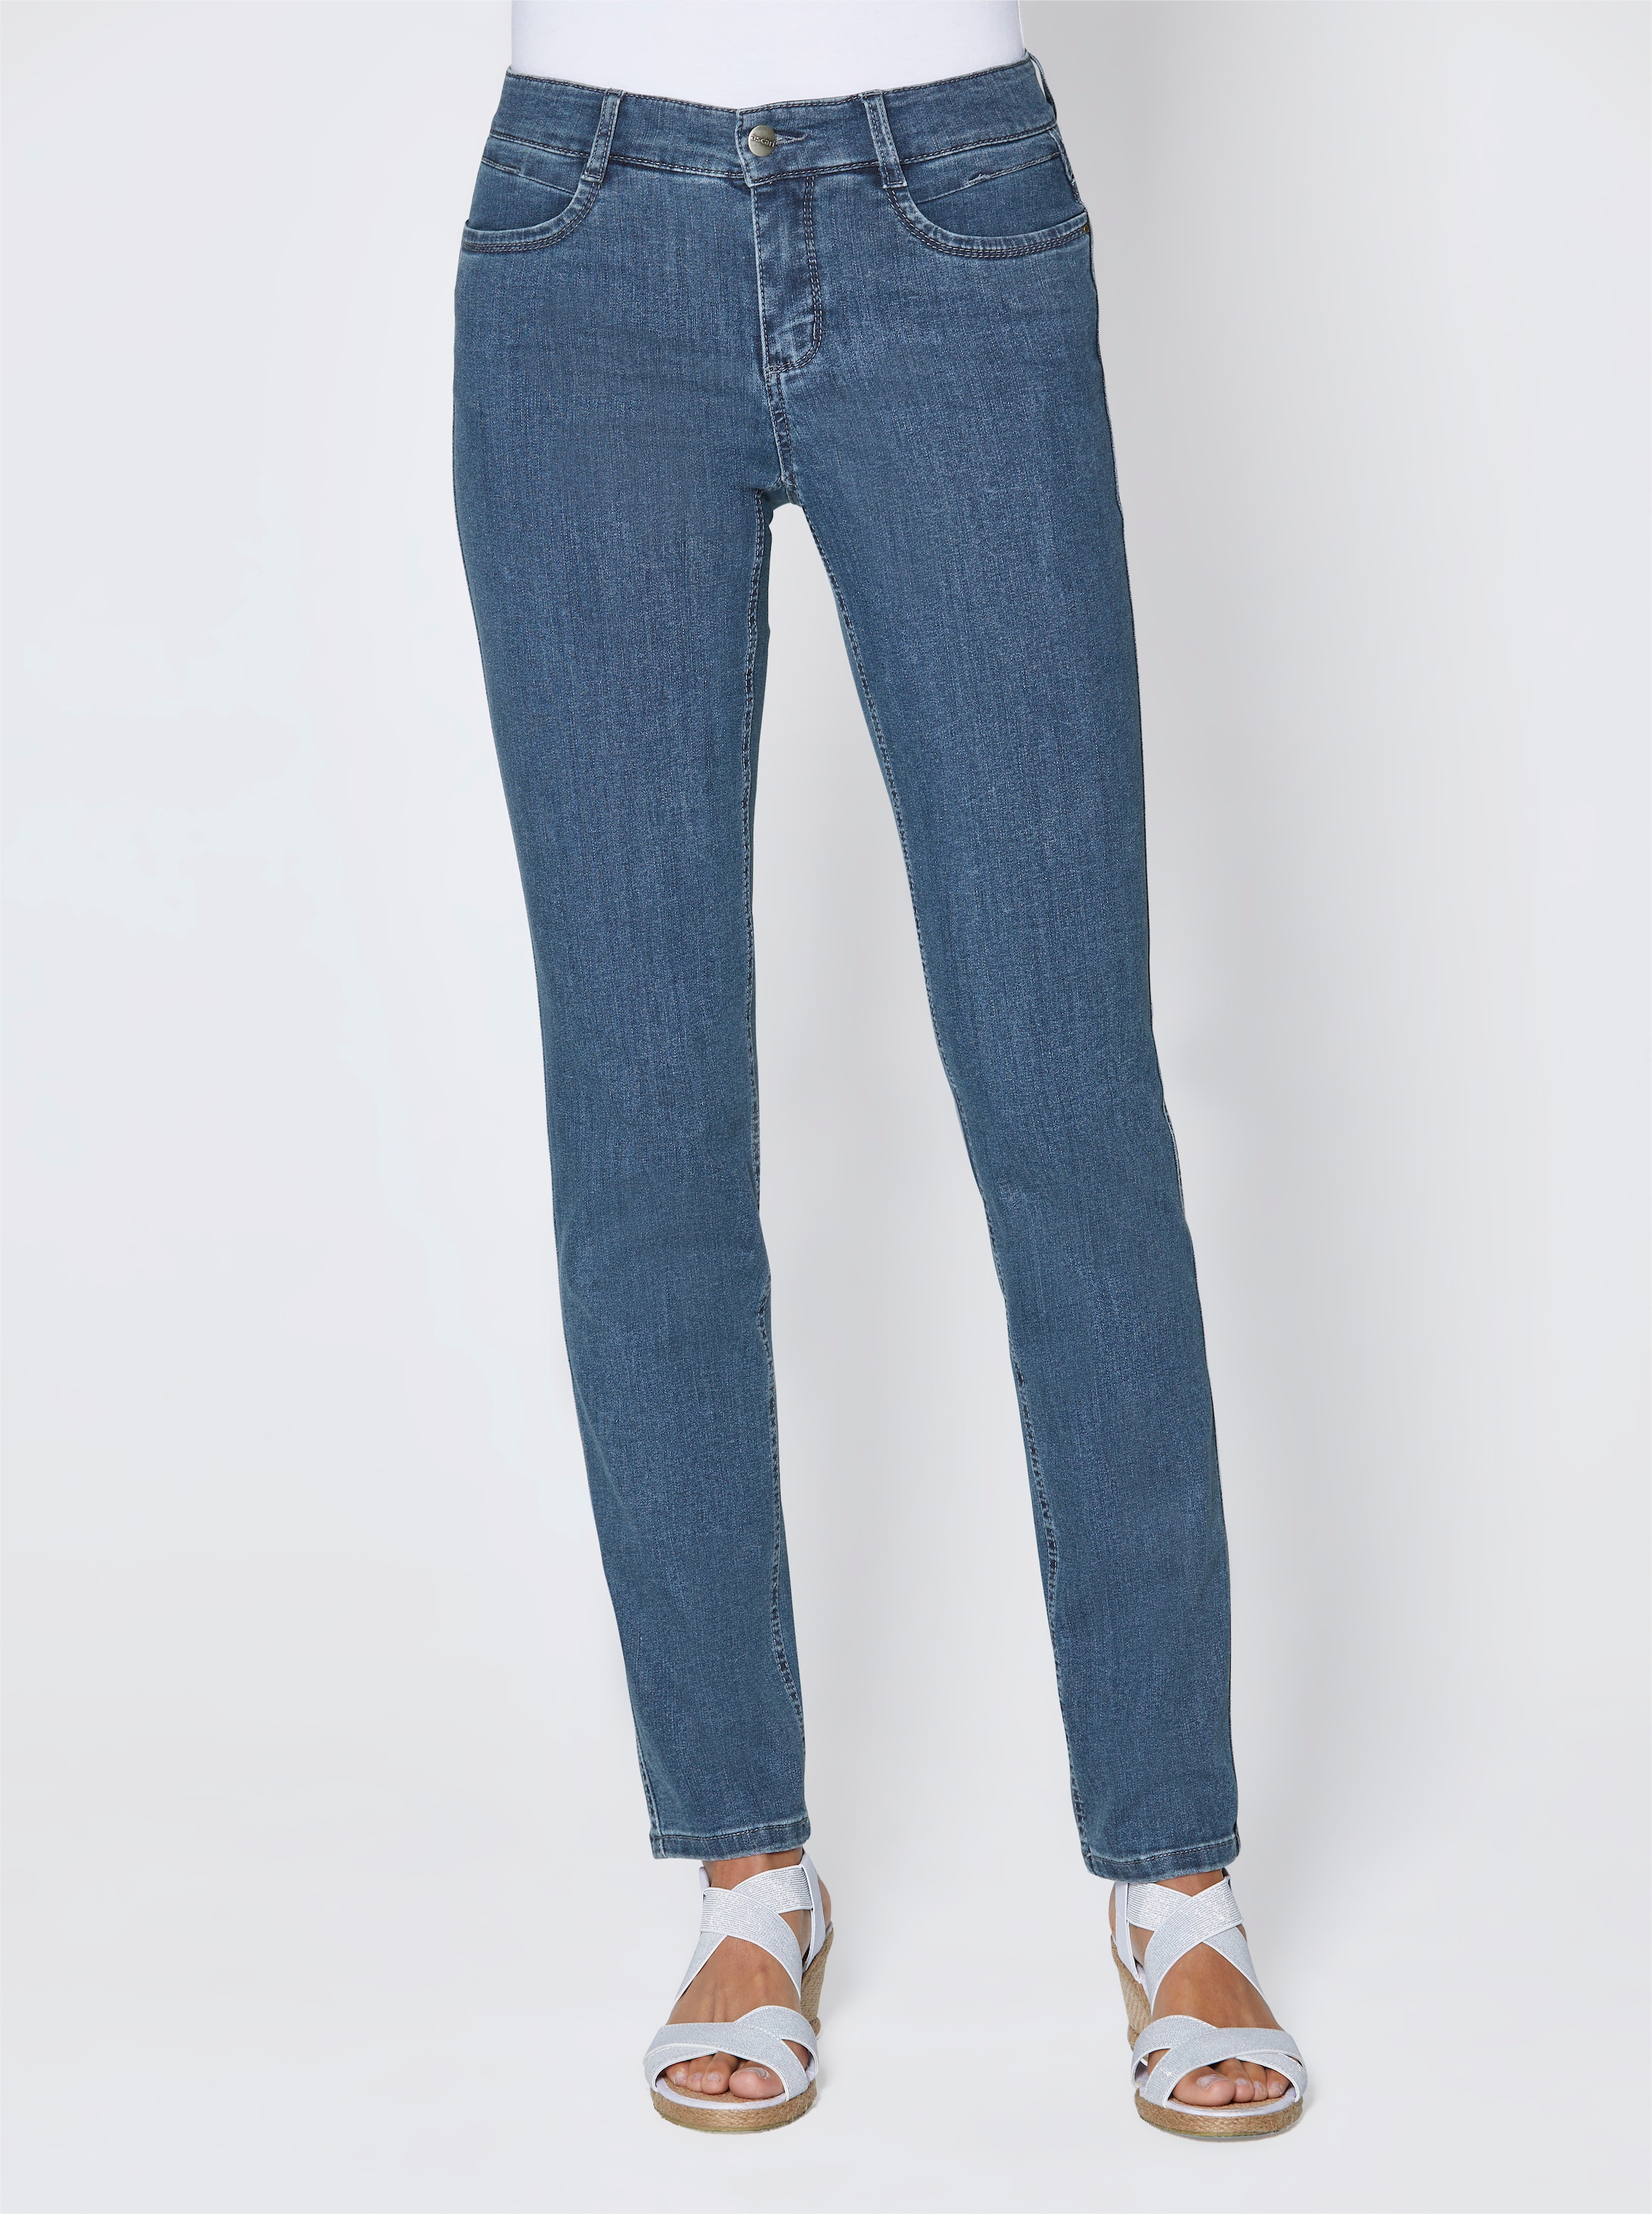 Ist zu günstig Kaufen-Stretch-Jeans in jeansblau von Ascari. Stretch-Jeans in jeansblau von Ascari <![CDATA[Perfekt zur aktuellen Mode! Edel-Jeans in schmaler Röhrenform. Sitzt super und ist herrlich bequem dank der bi-elastischen Superstretch-Qualität. Unser Tipp: Für eine